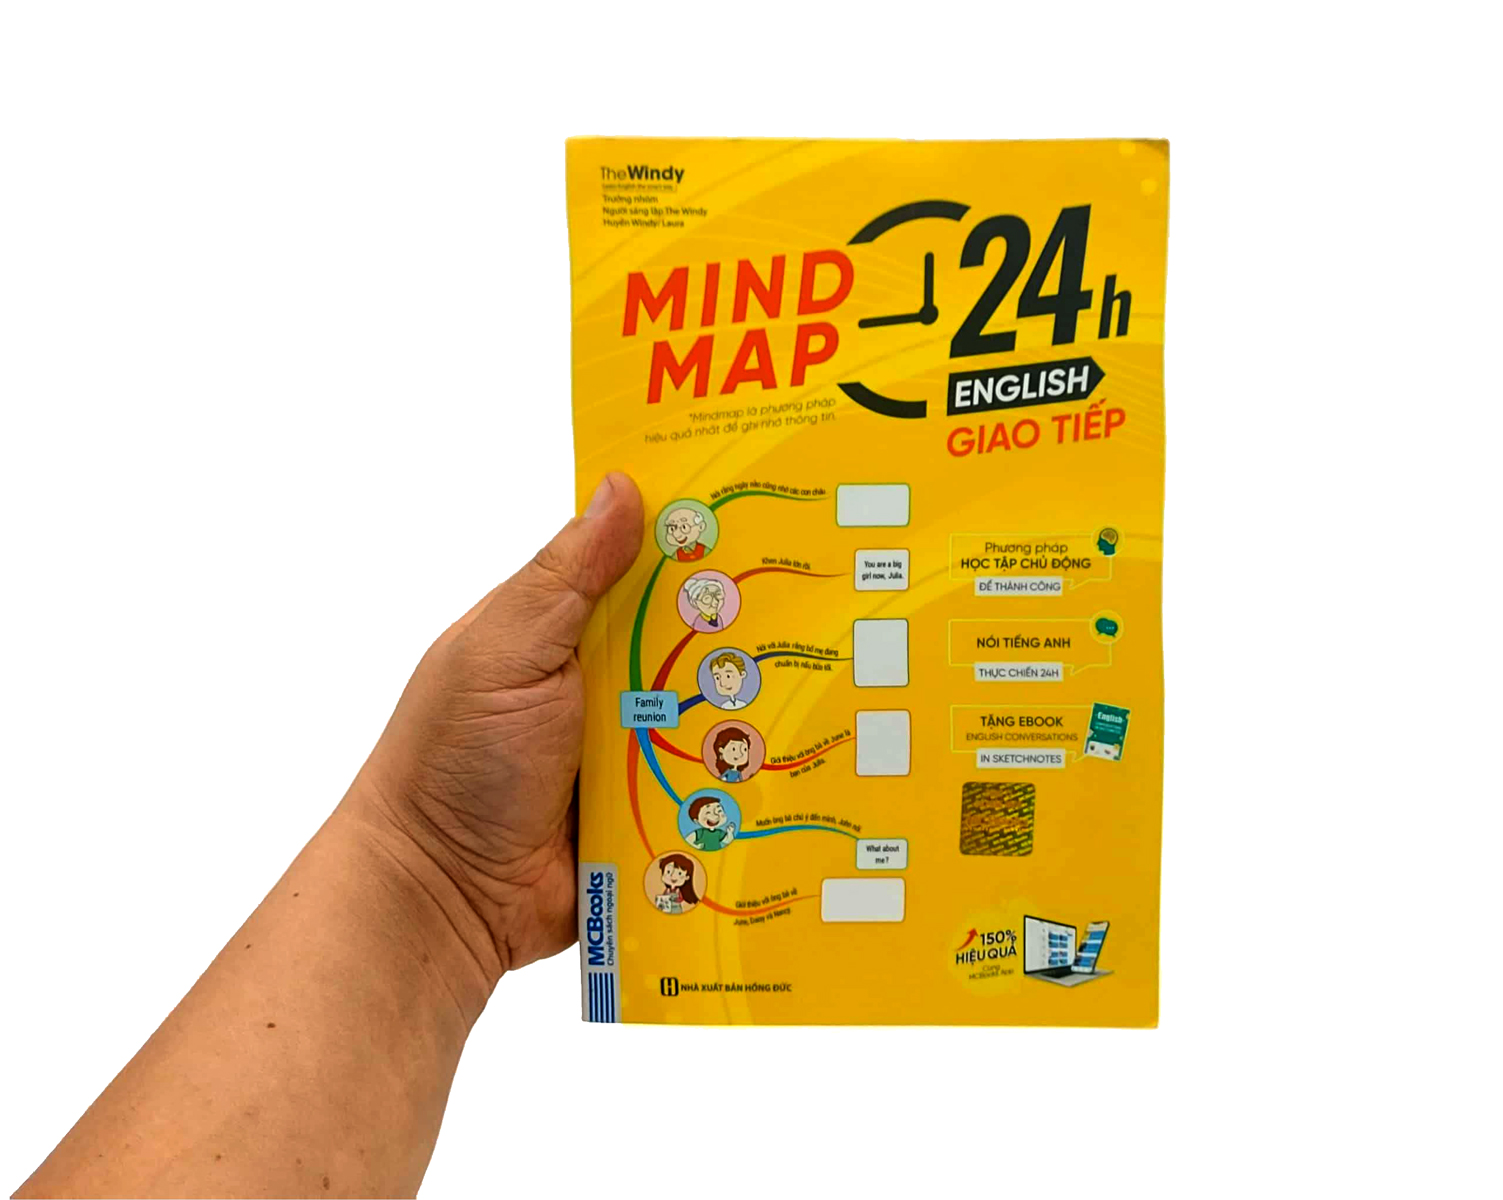 Mind Map 24H English - Giao Tiếp - Học Tiếng Anh Giao Tiếp Thực Chiến Cực Kỳ Hiệu Quả Thông Qua Sơ Đồ Tư Duy PDF